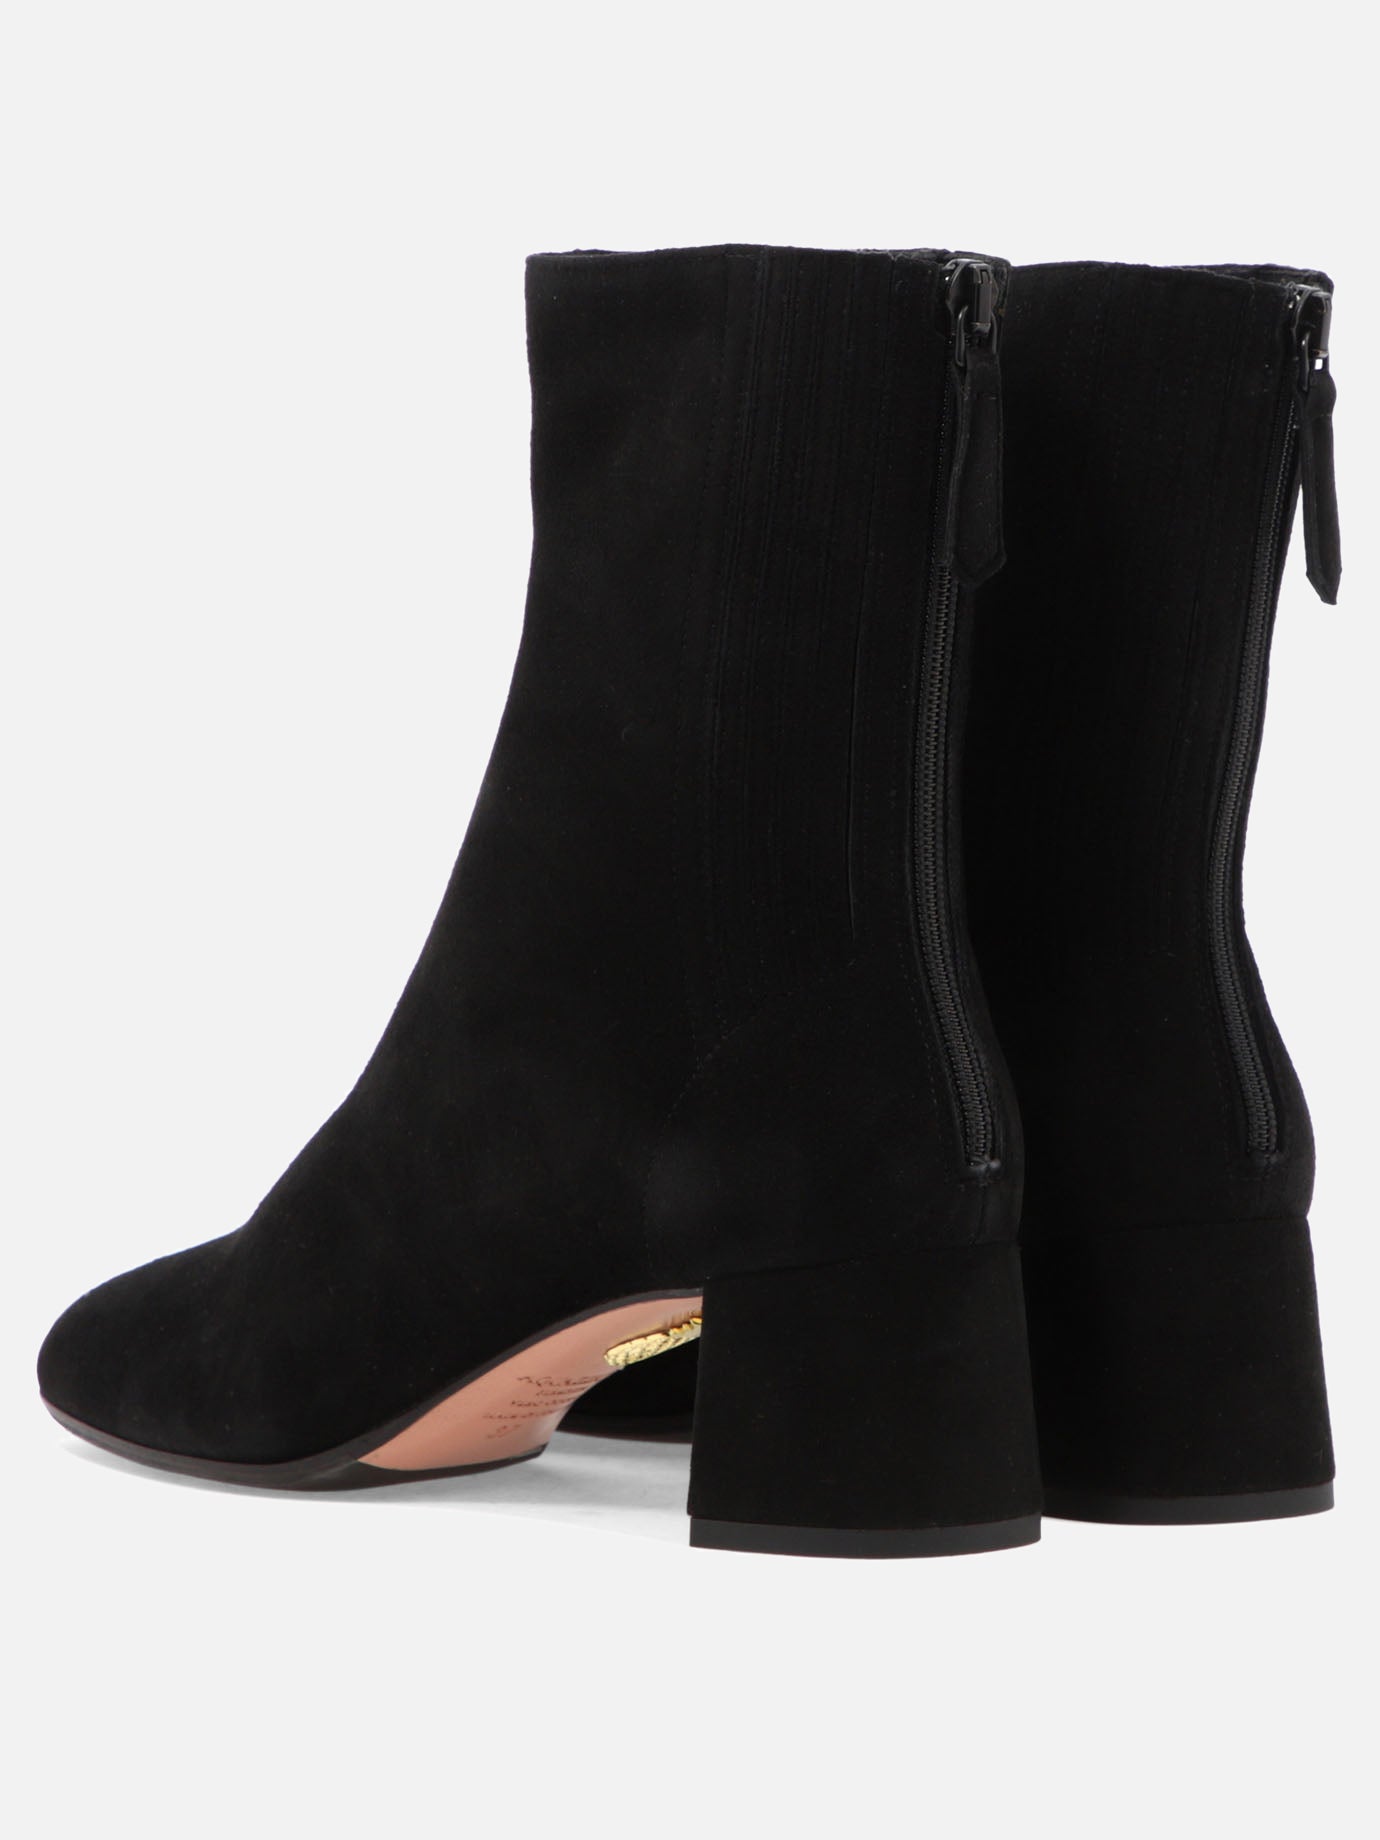 "Saint Honoré" boots